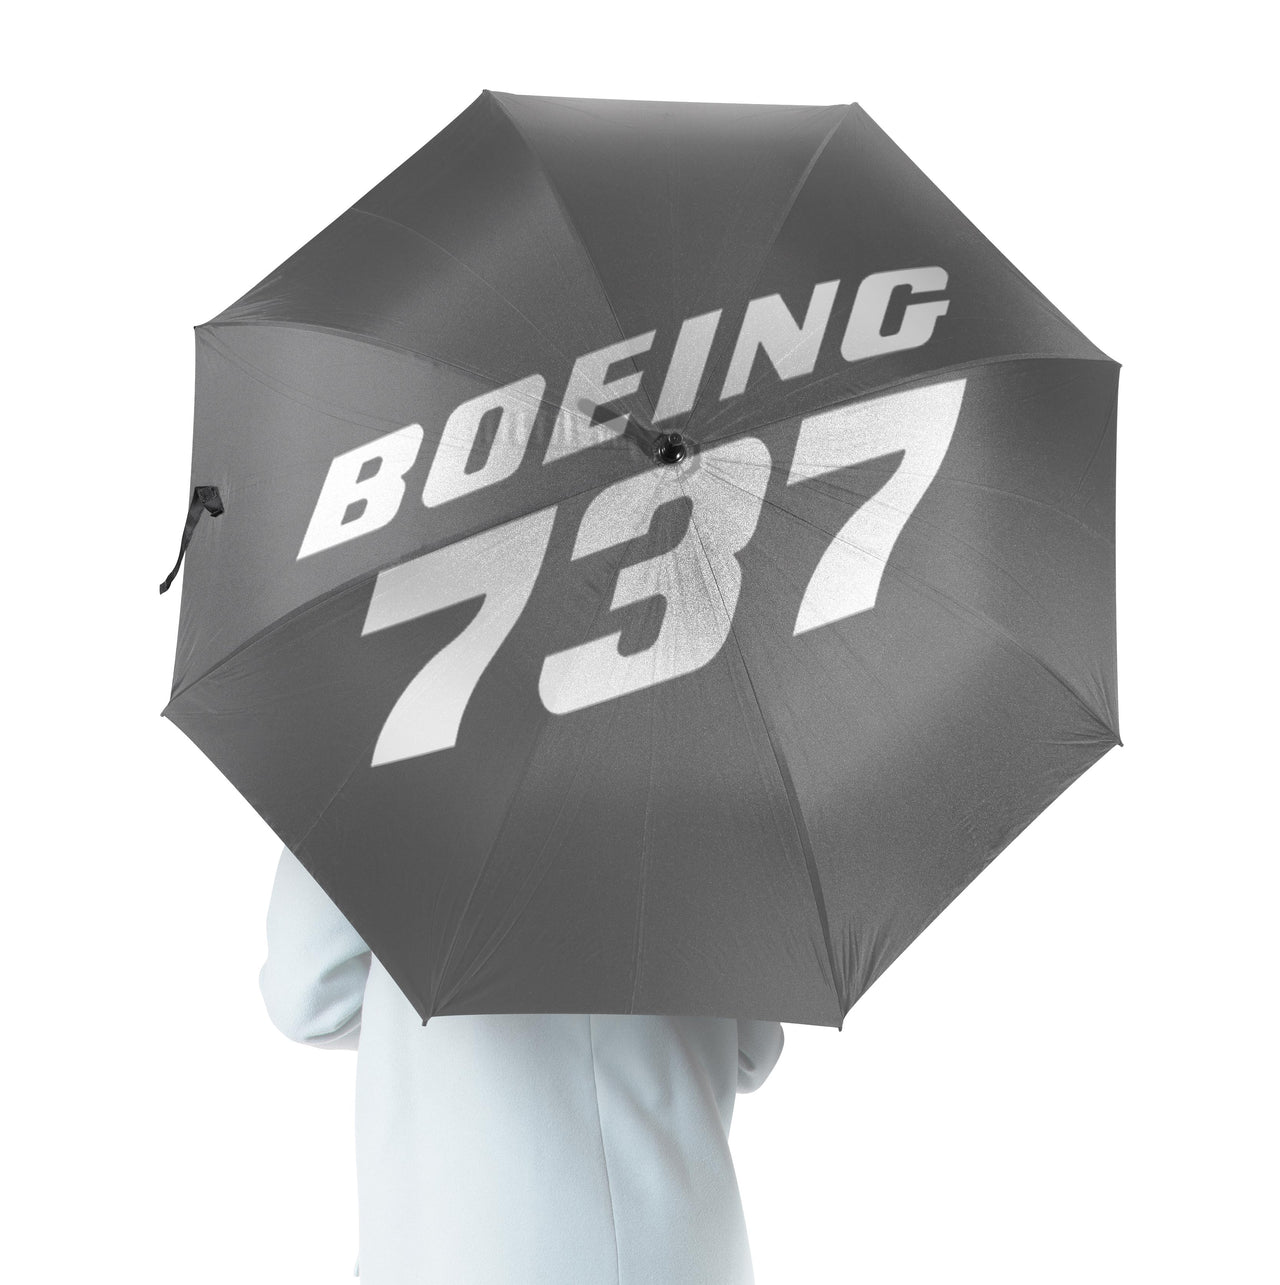 Boeing 737 & Text Designed Umbrella